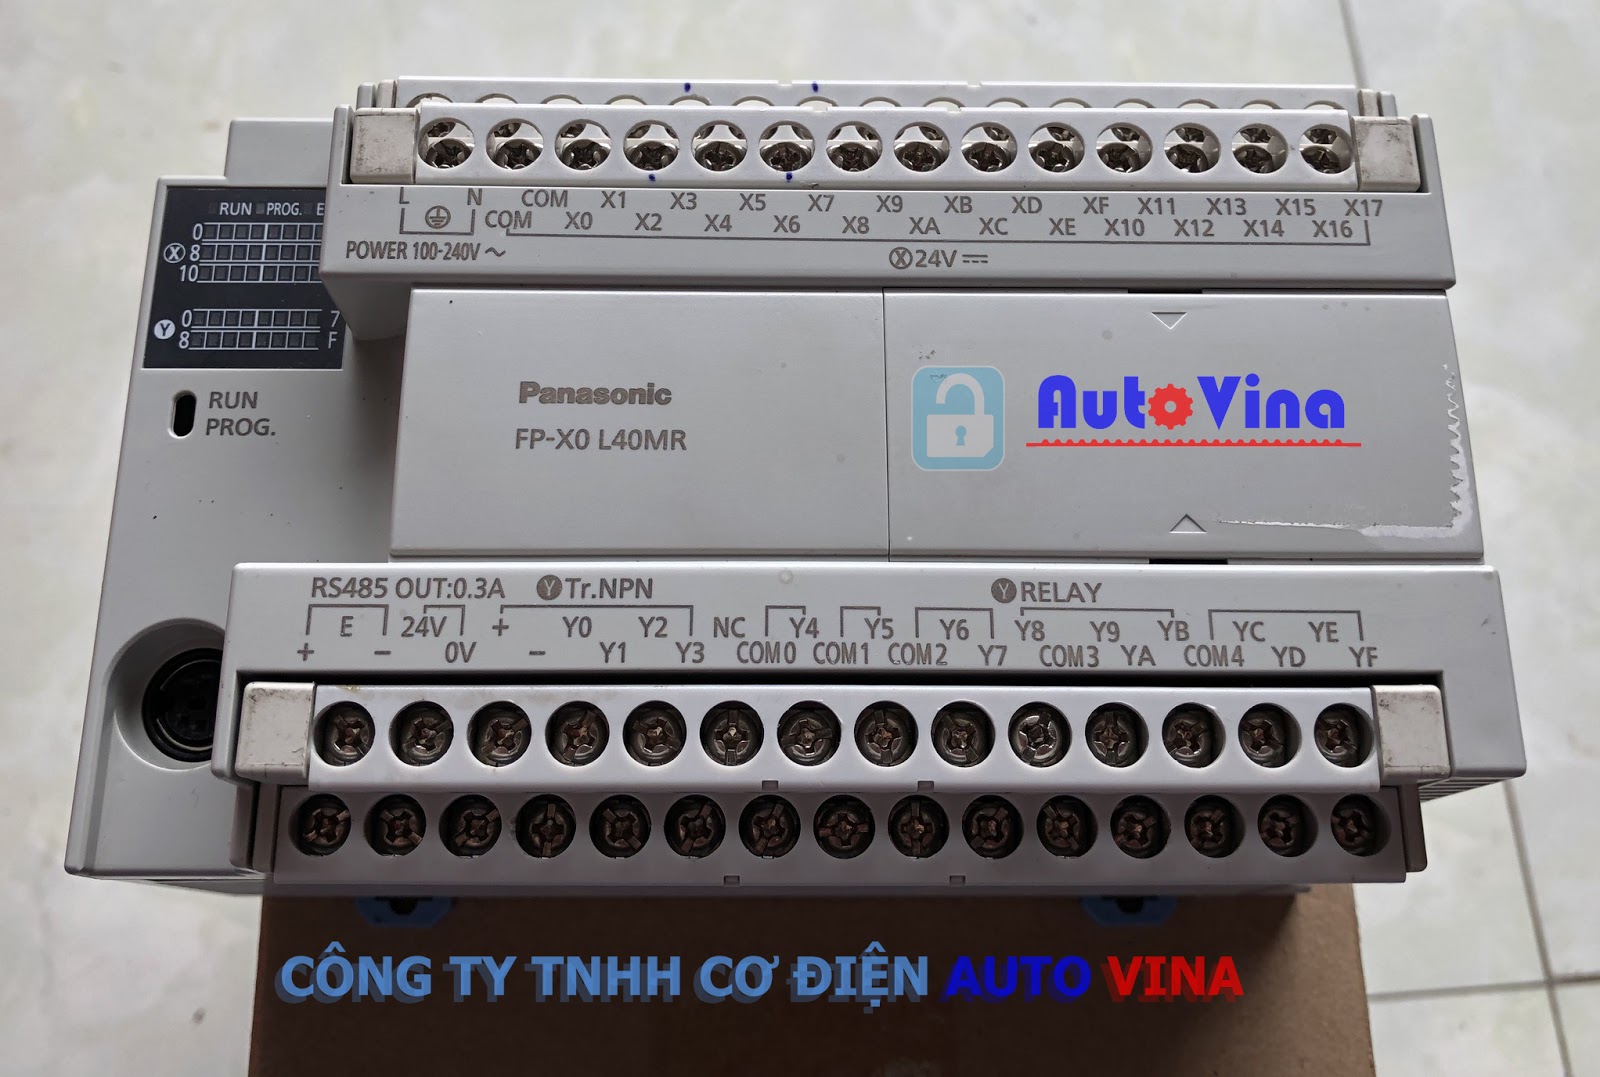 PLC Panasonic FP-X0 L40MR được khách hàng gửi về văn phòng Công ty Auto Vina tại Hà Nội để mở khóa